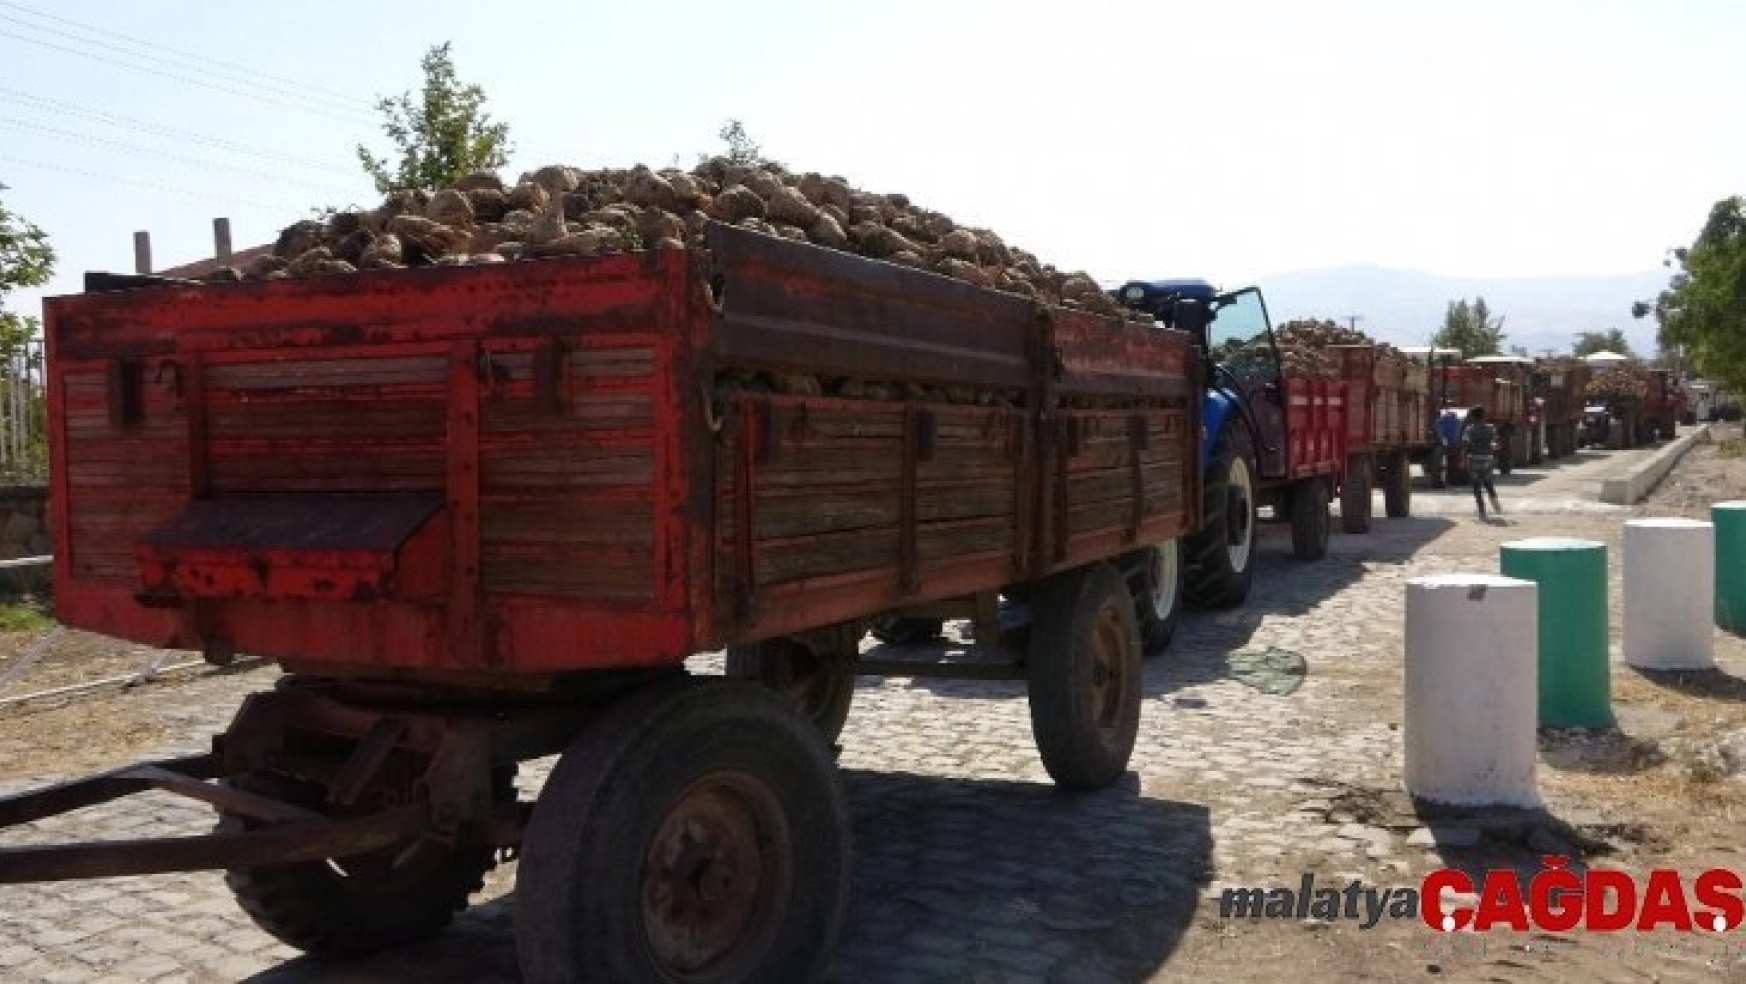 Elazığ'da 165 bin ton üretimi beklenen pancarın alım kampanyası başladı